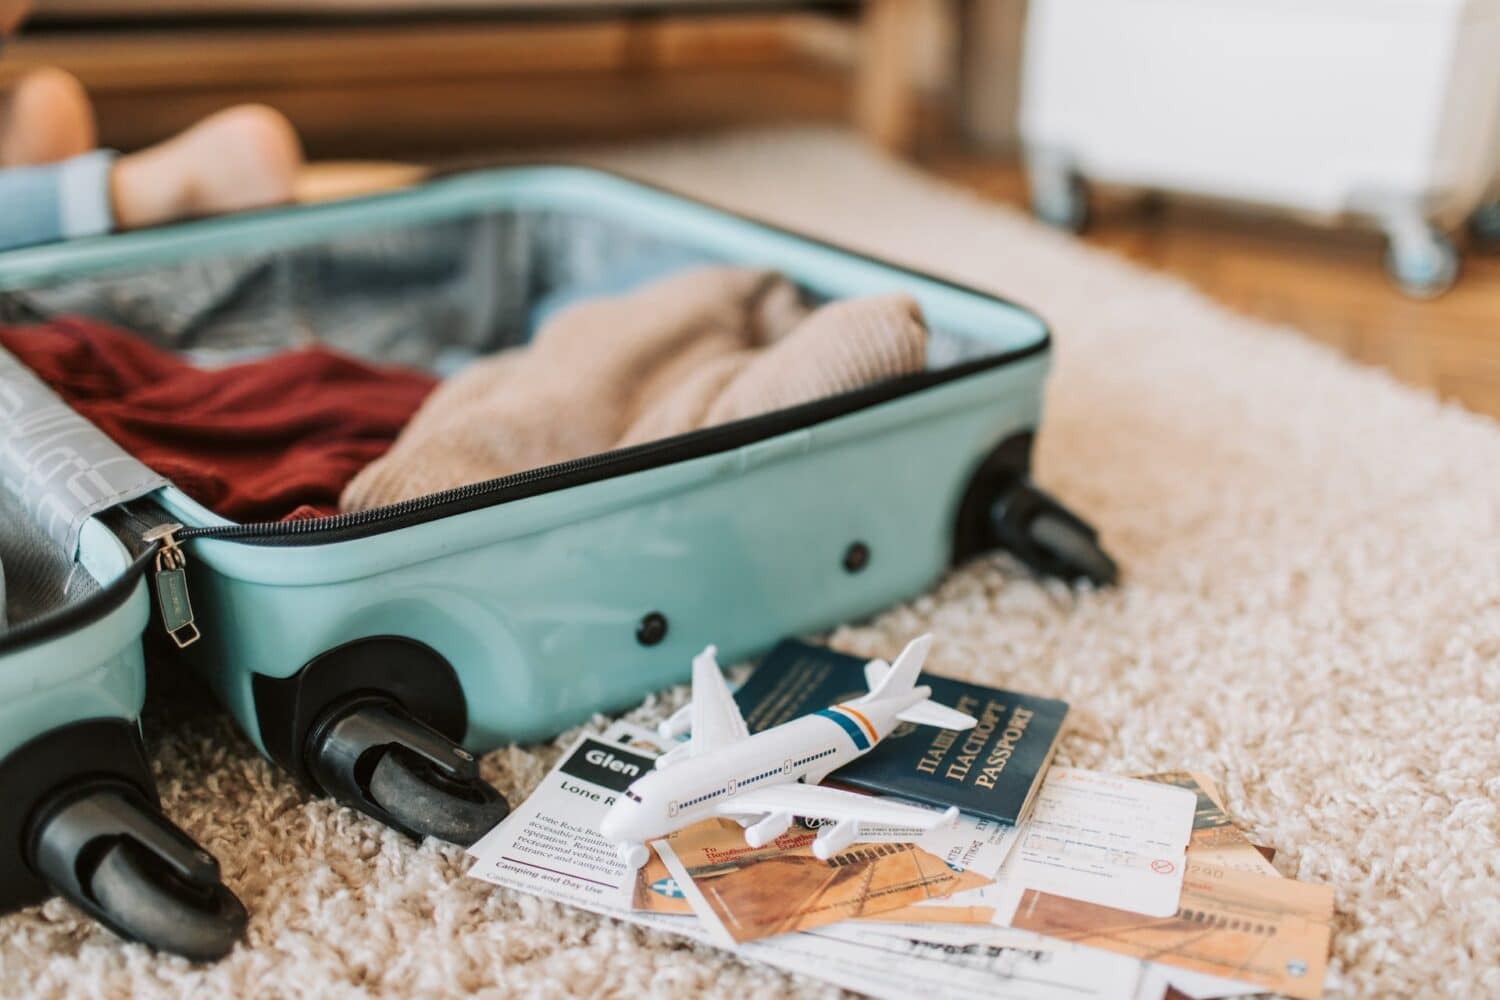 Mala de viagem sendo montada no chão, com roupas e documentos separados, além de uma miniatura de avião em cima de um mapa, para ilustrar o post de seguro viagem gratuito